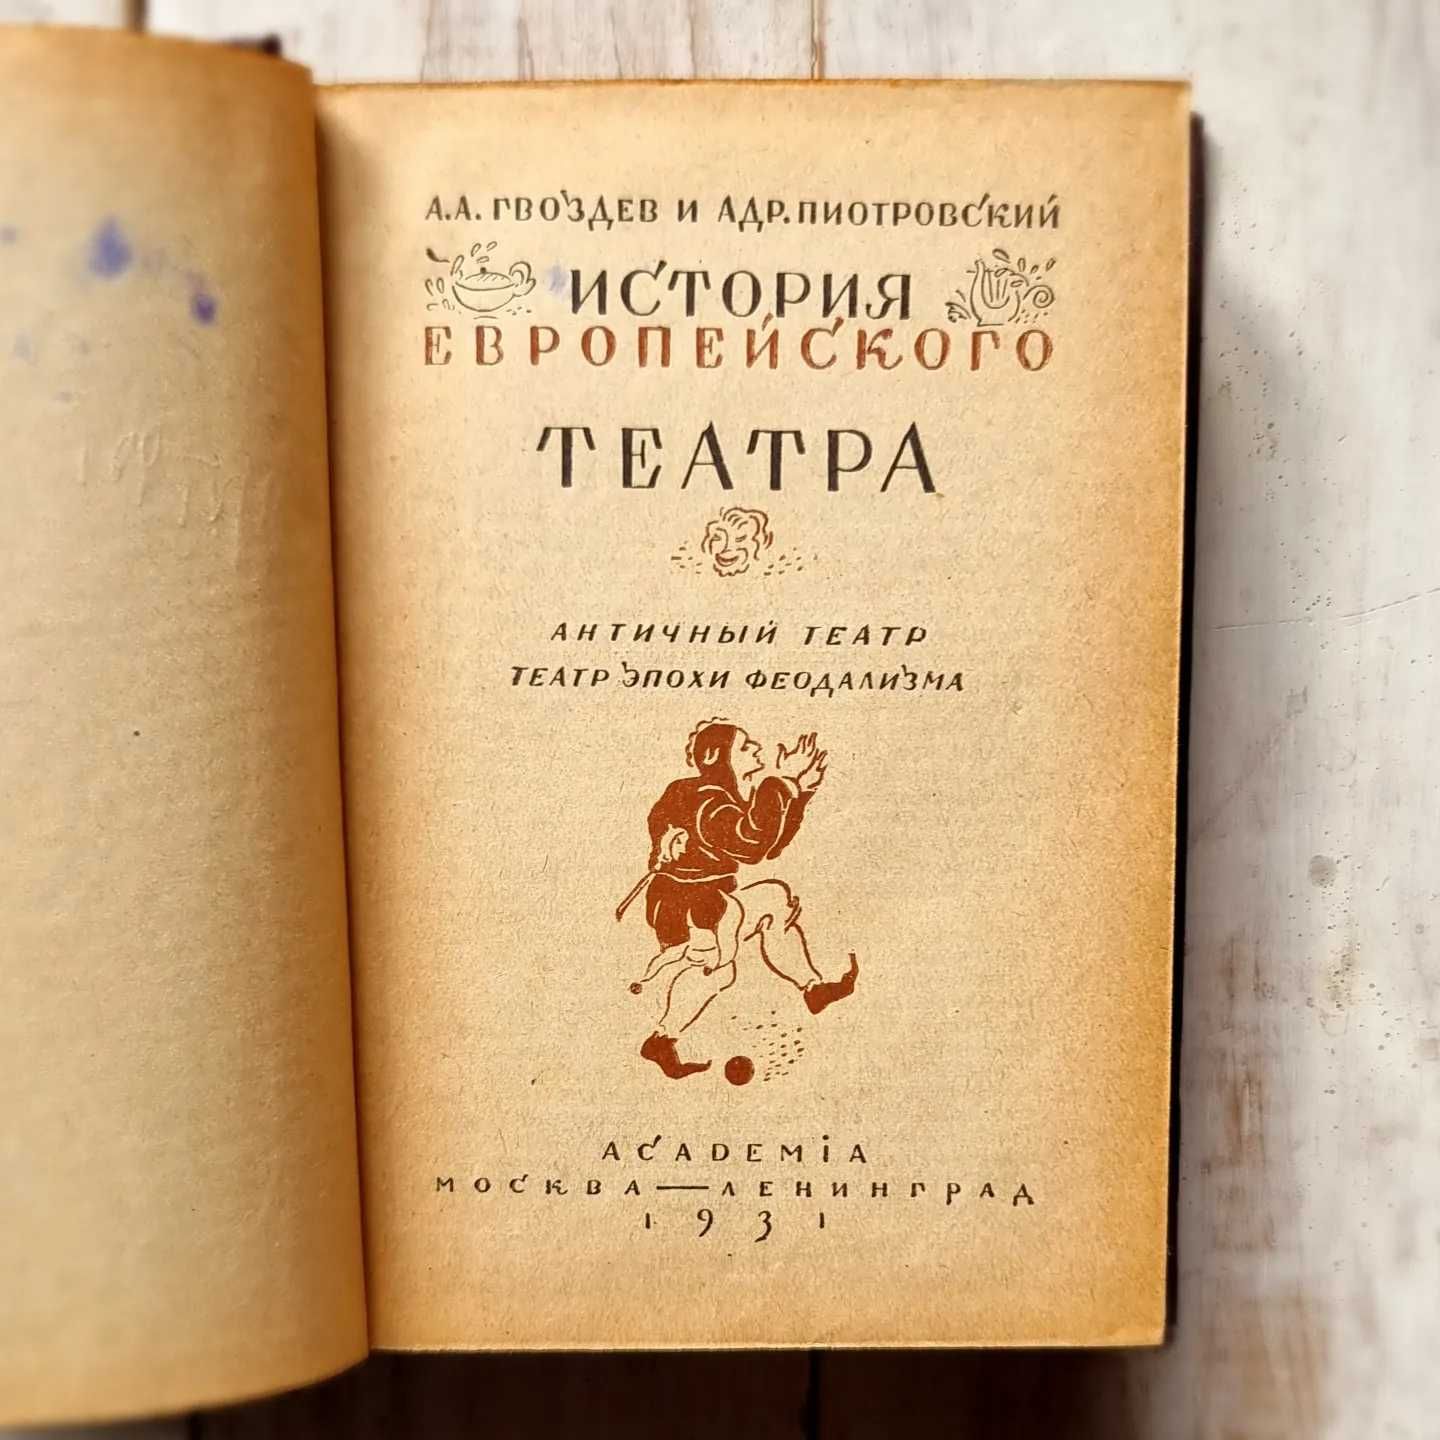 Гвоздев А, Пиотровский А. История европейского театра, 1931